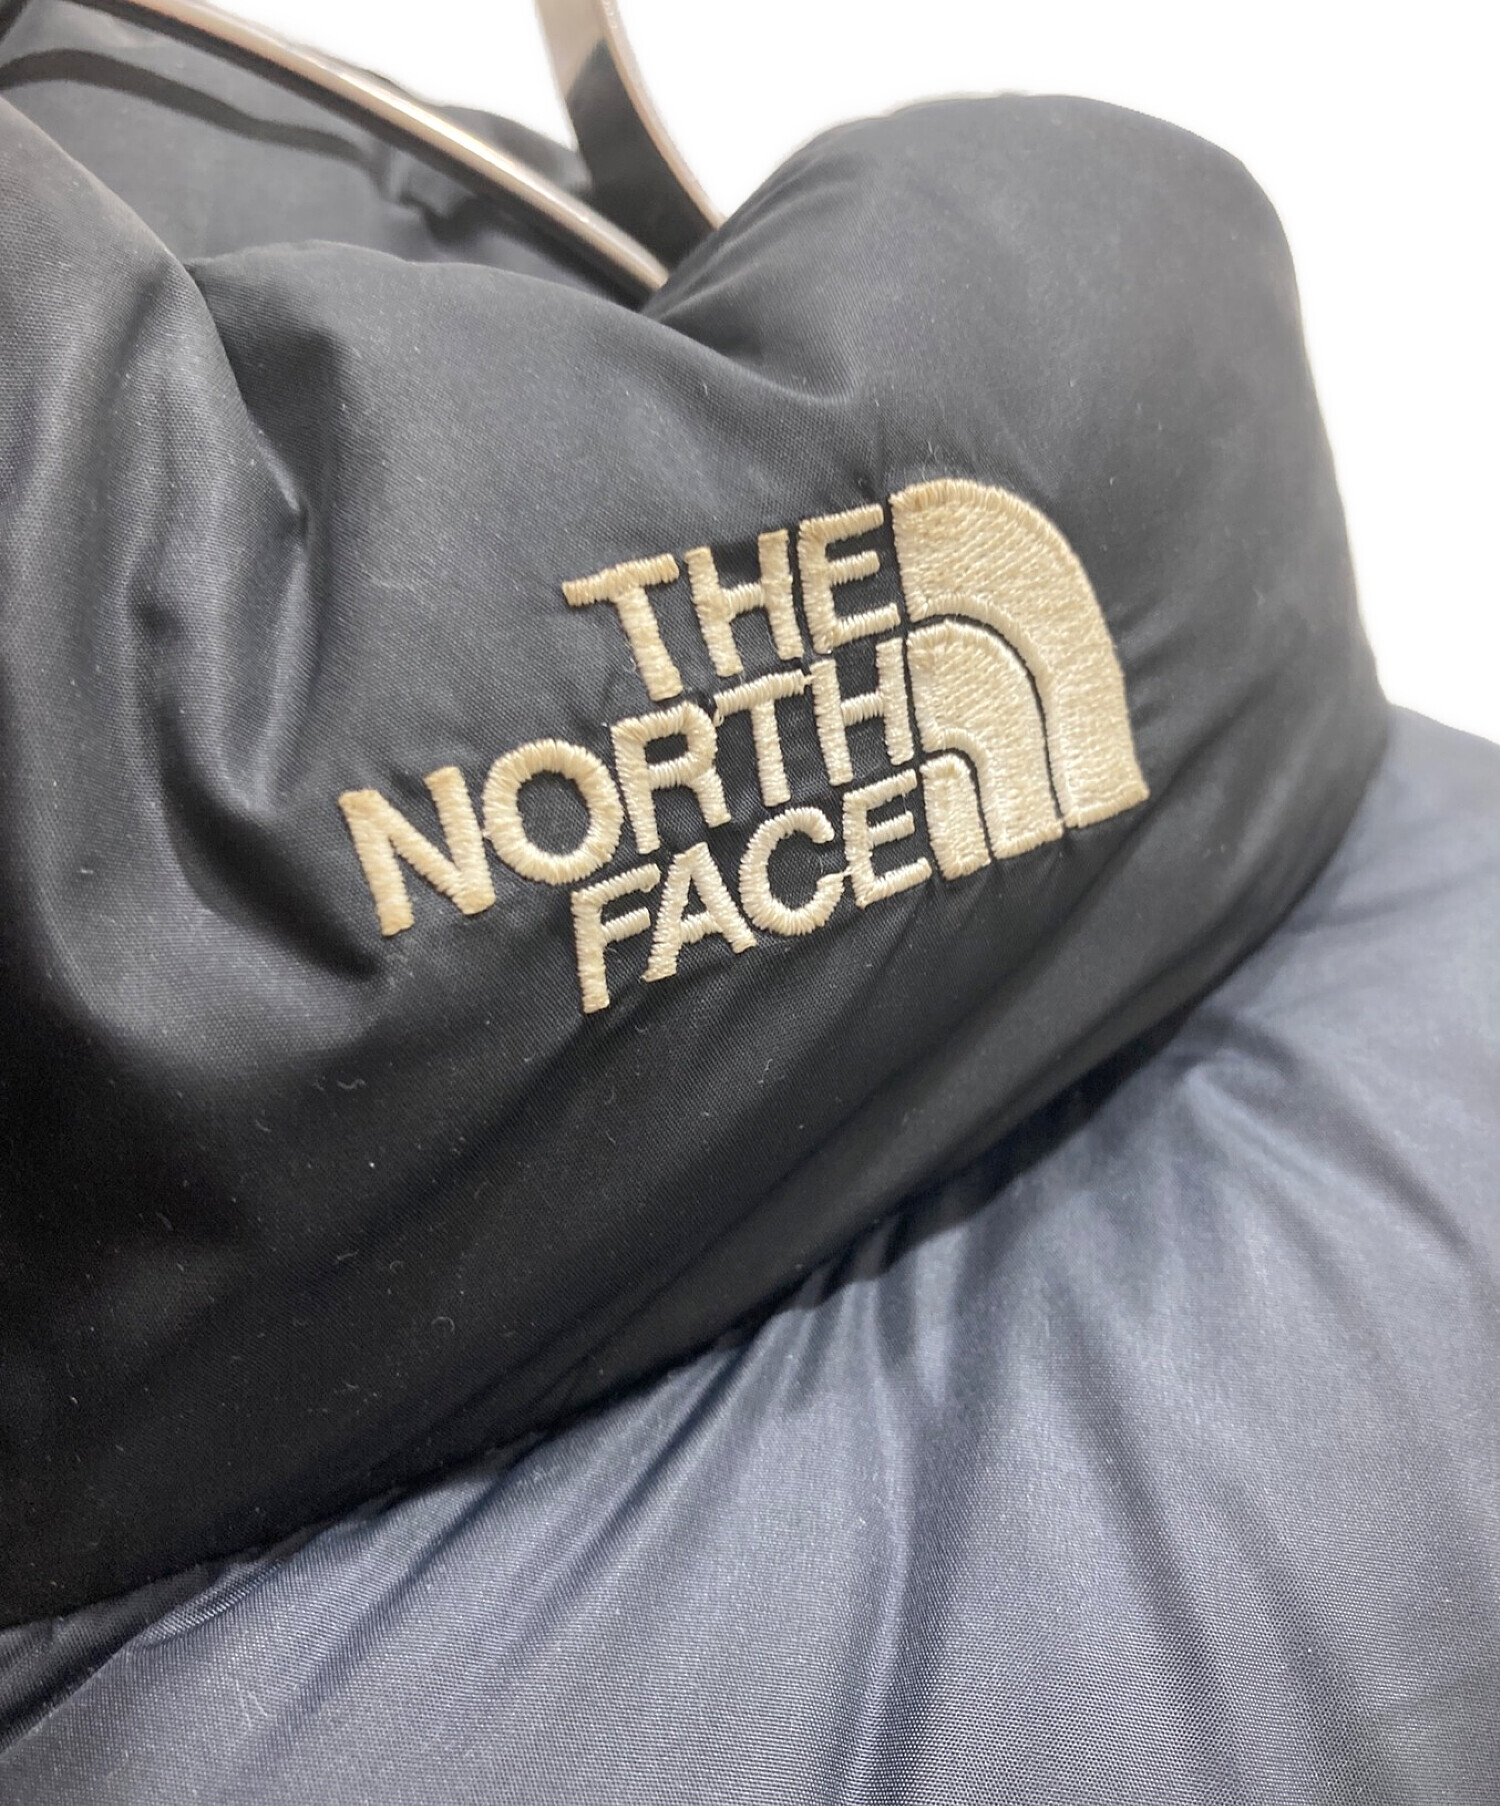 THE NORTH FACE (ザ ノース フェイス) ASCENT JACKET ブラック サイズ:M